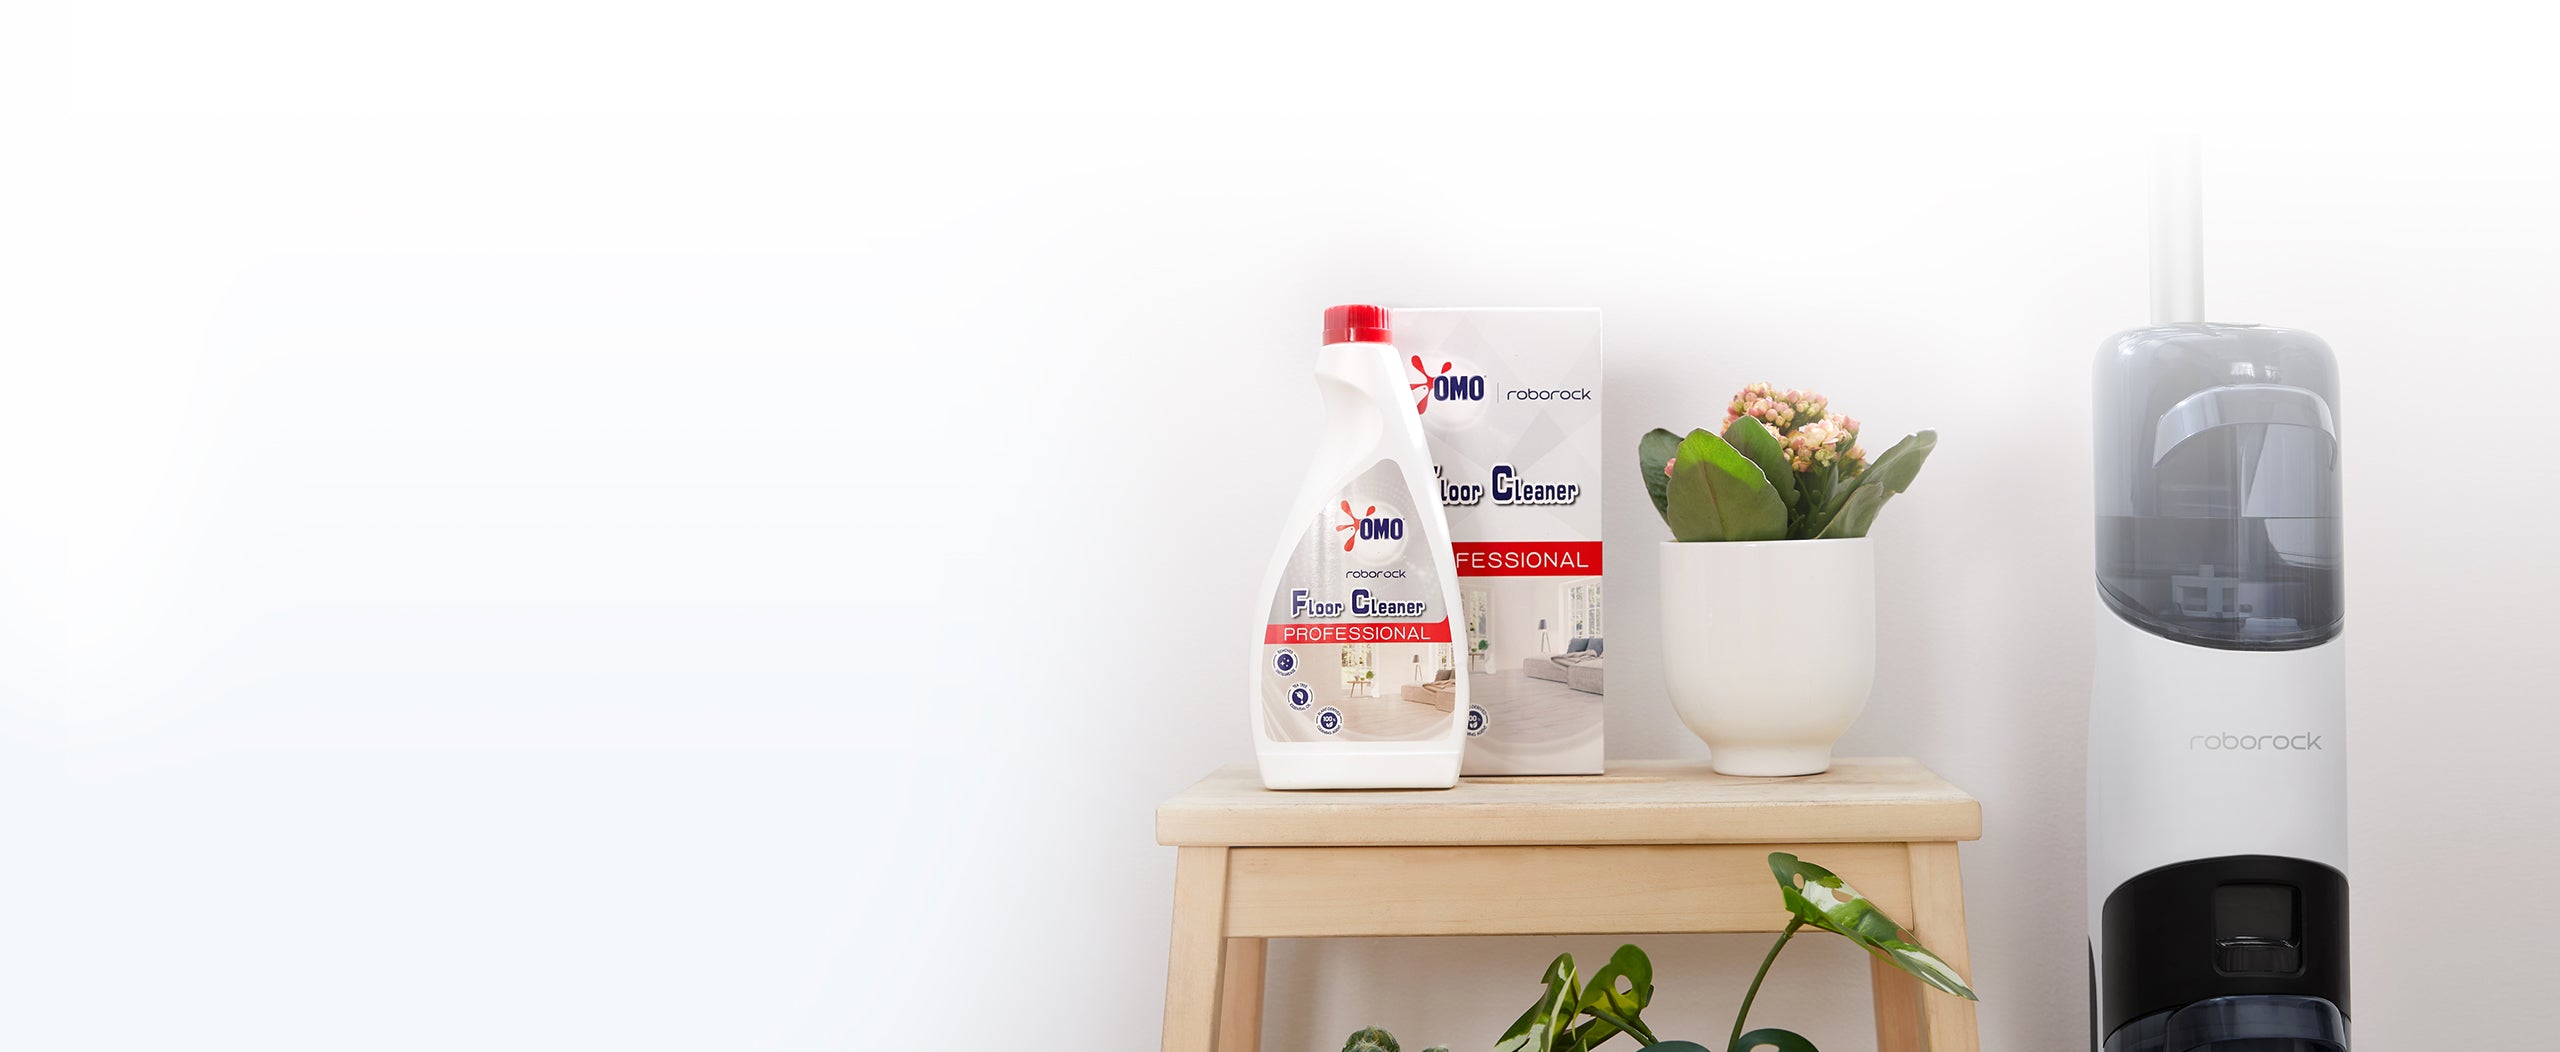 Aspirateur laveur de sol créé pour Roborock par Unilever